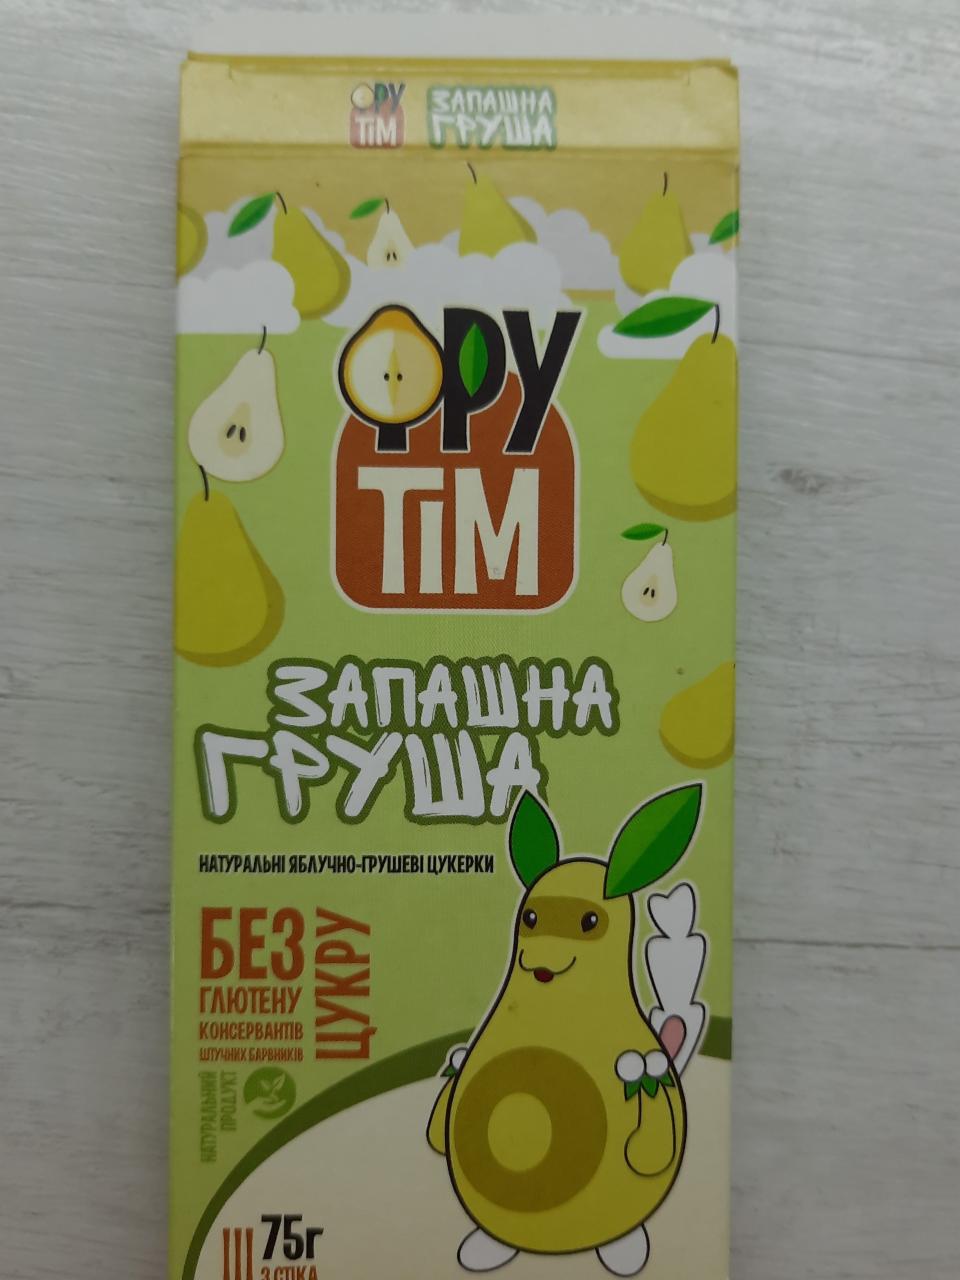 Фото - яблочно-грушевые конфеты Фру Тiм